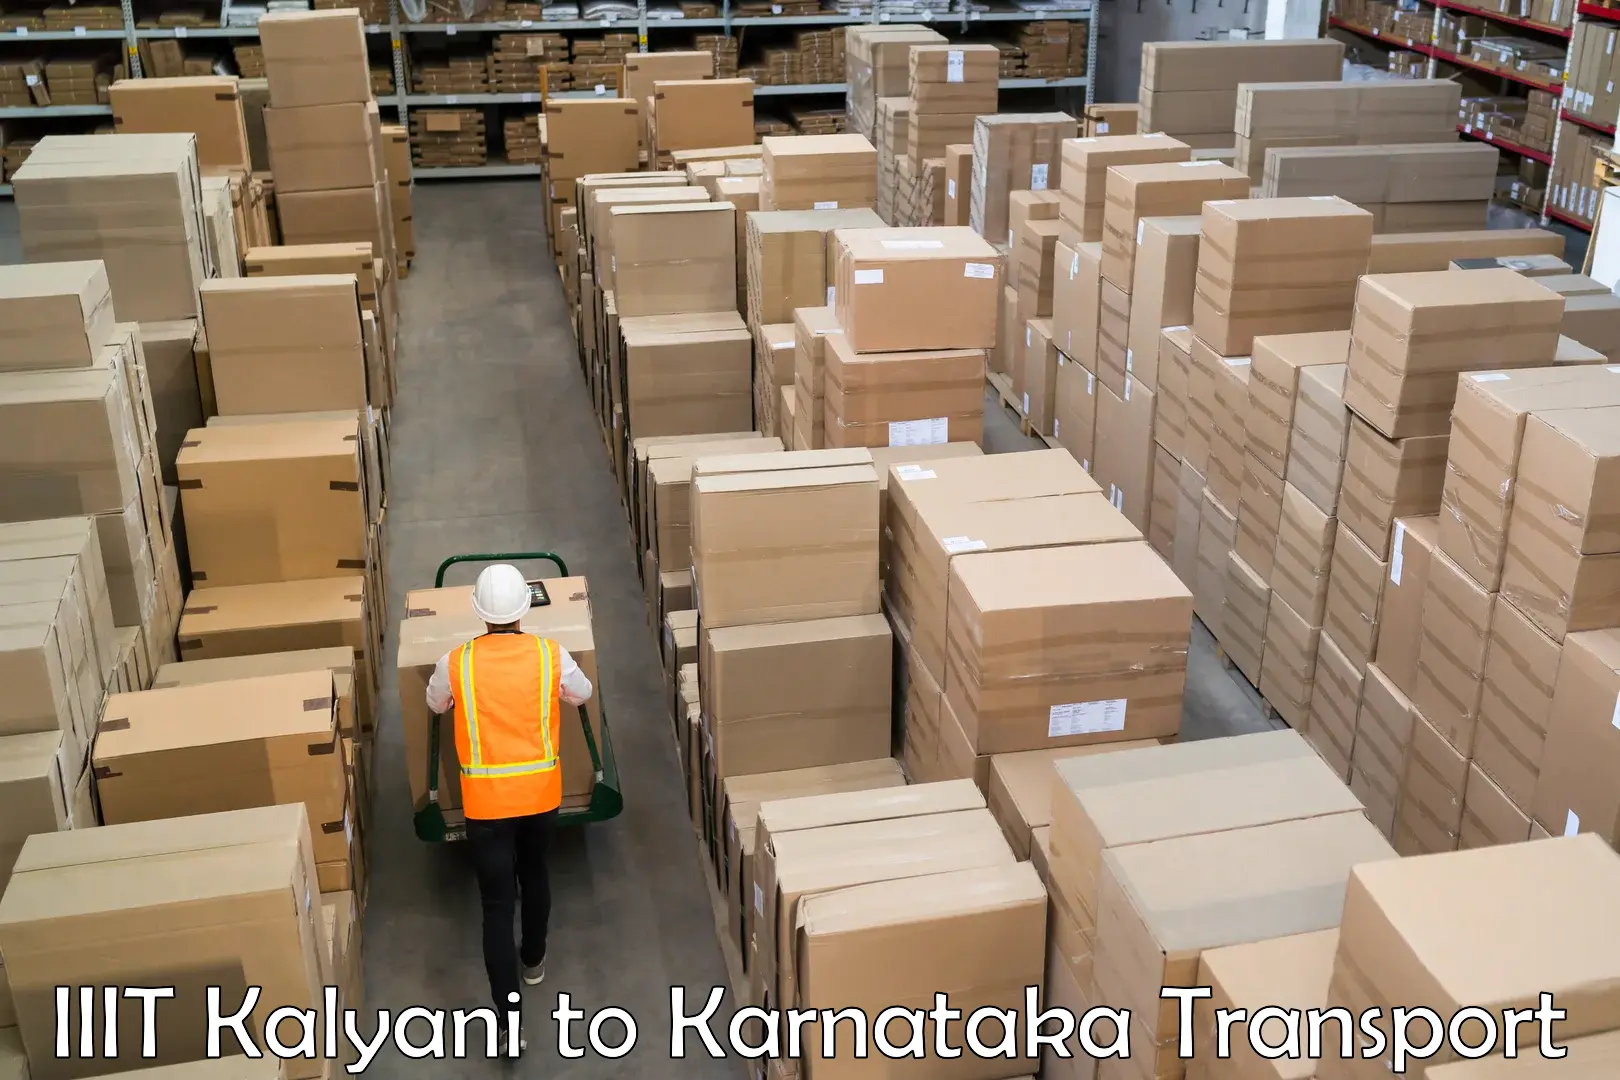 Interstate transport services IIIT Kalyani to Maramanahalli